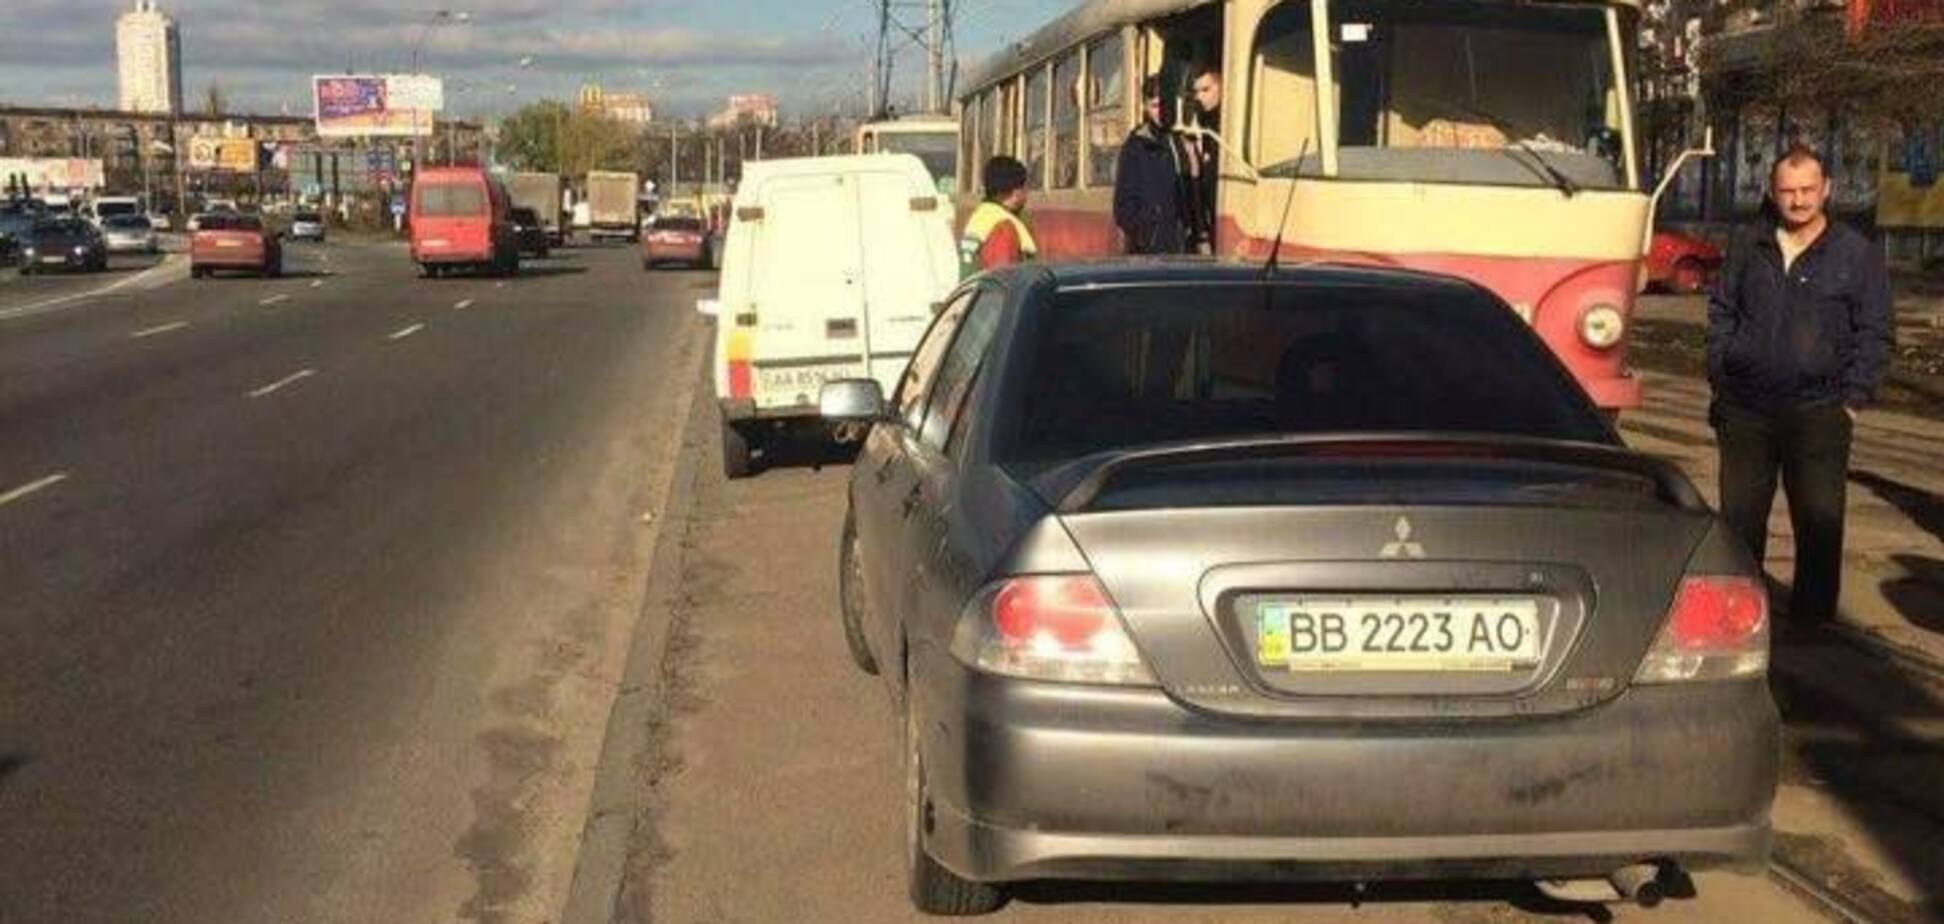 І нехай весь світ зачекає: мережу вразила нахабність водія в Києві